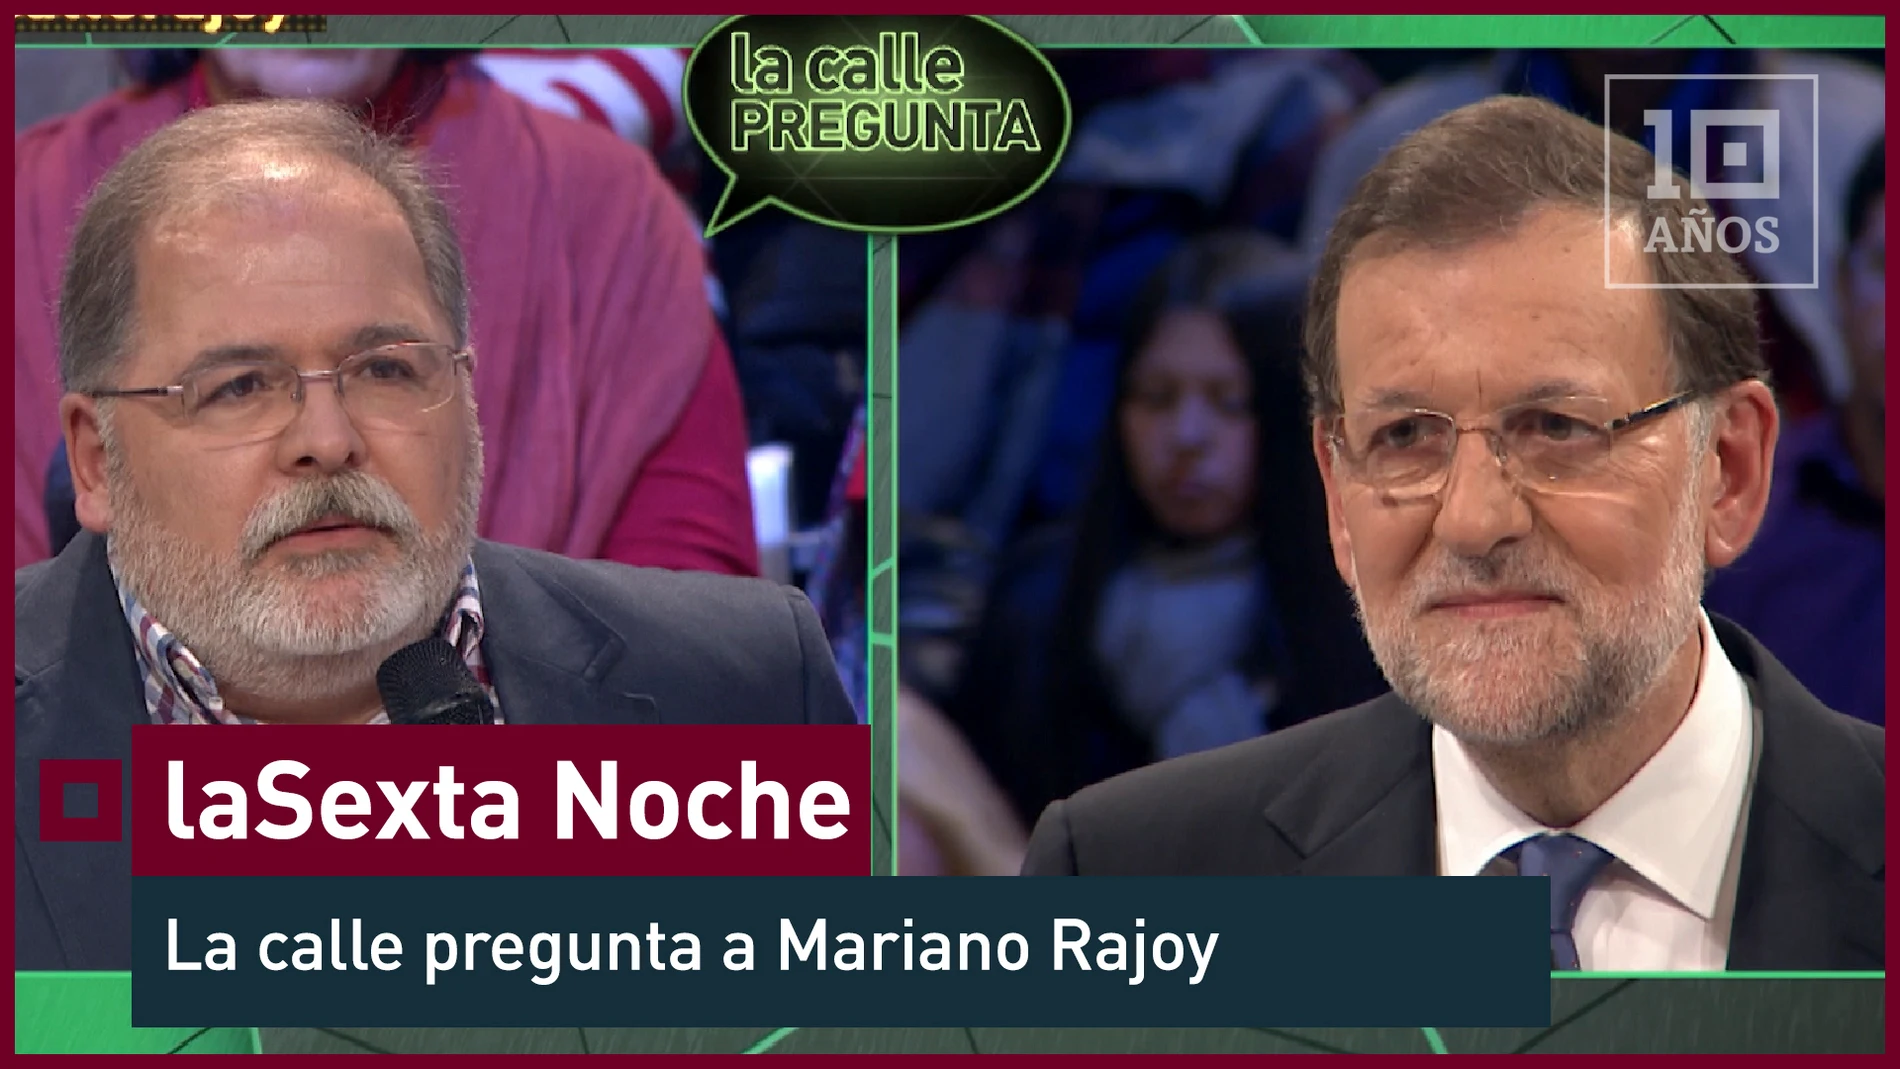 2015. A Mariano Rajoy "¿Qué medidas van a tomar contra la corrupción?"